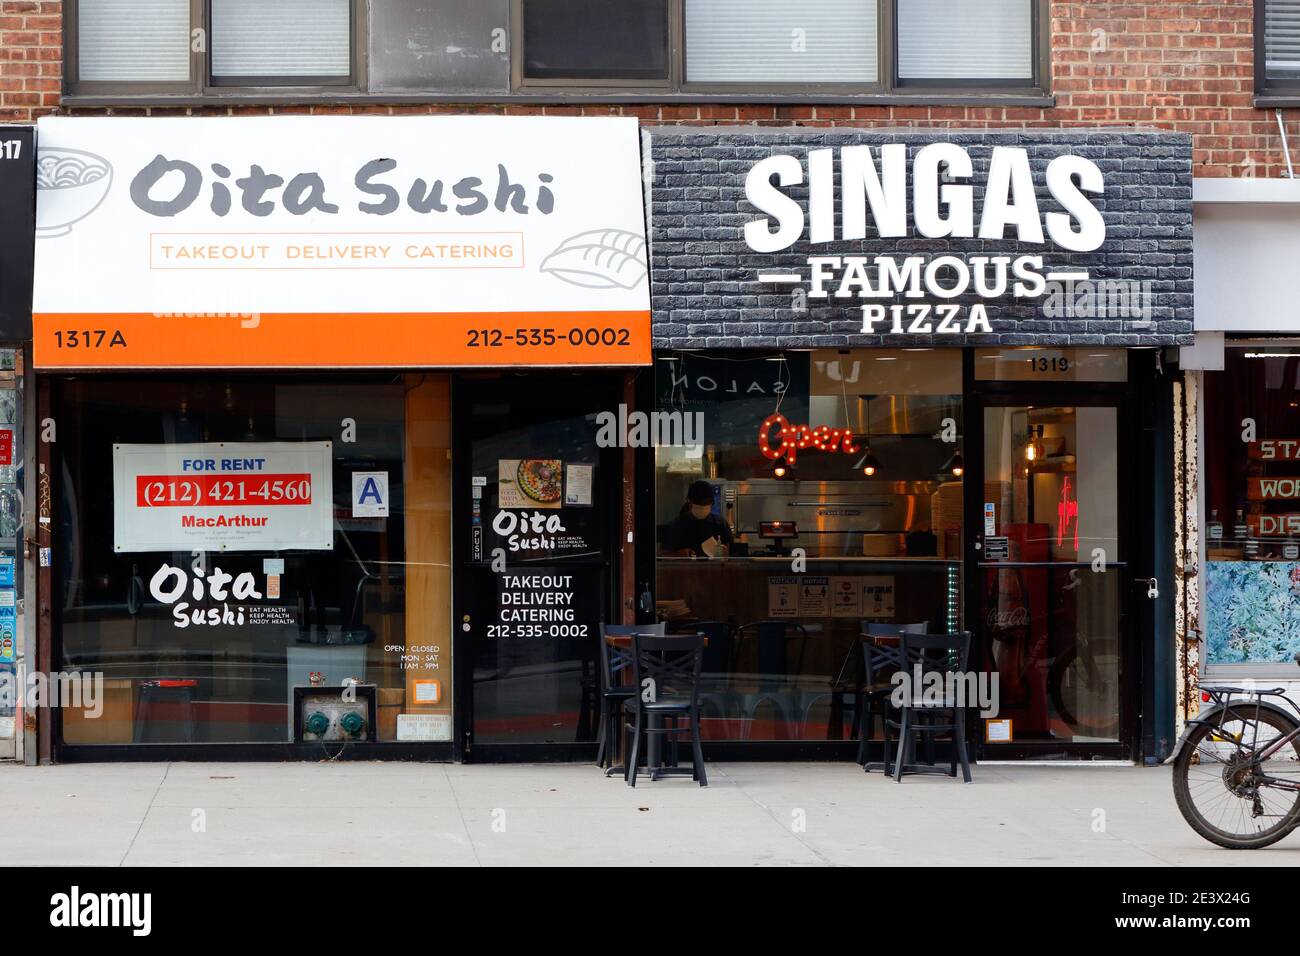 Singas Famous Pizza, 1319 Second Ave, New York, foto del negozio di New York di una catena di pizzerie nell'Upper East Side di Manhattan. Foto Stock